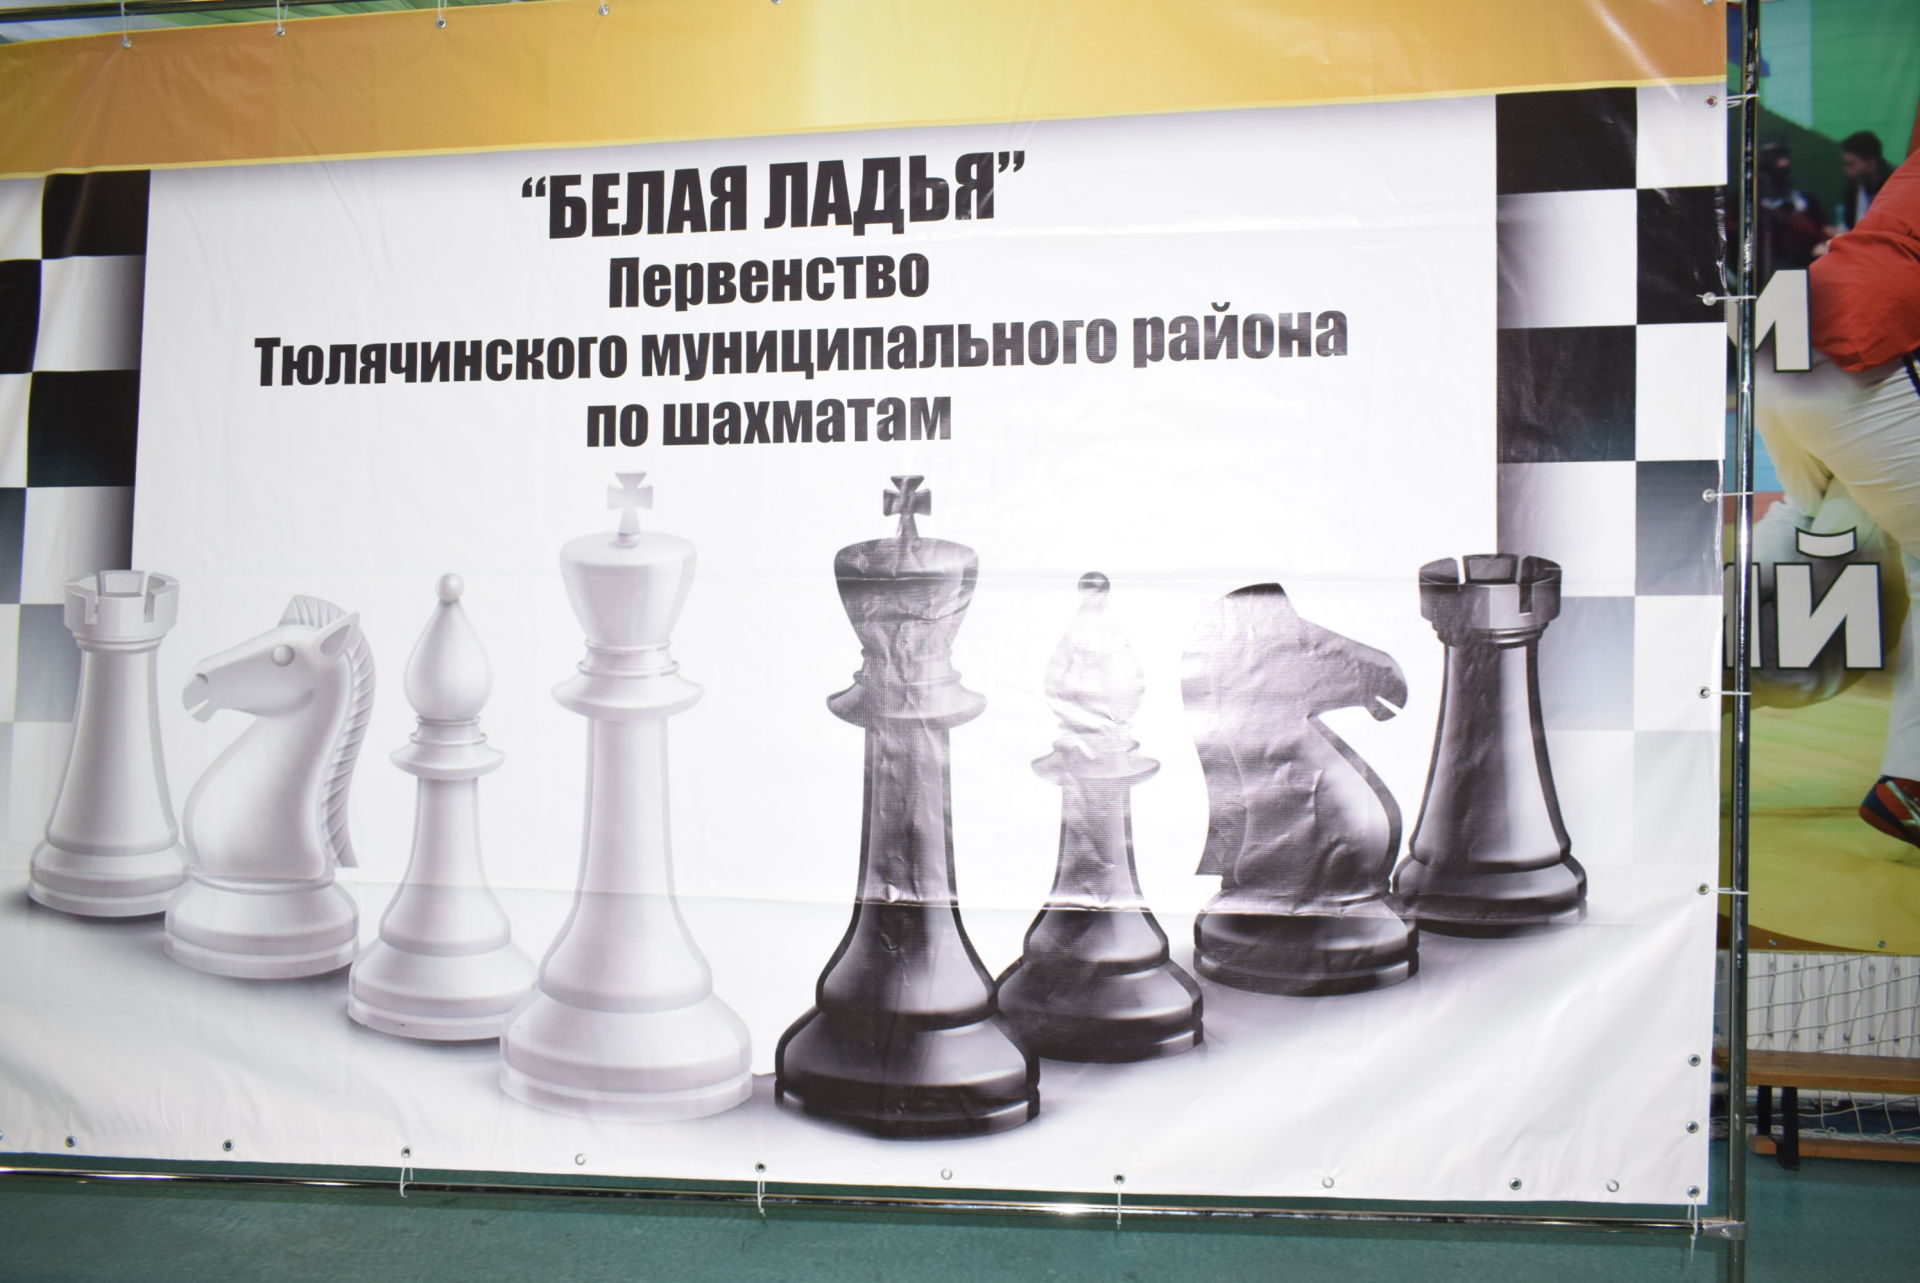 Шахмат - интеллектуаль акылны үстерергә ярдәм итә